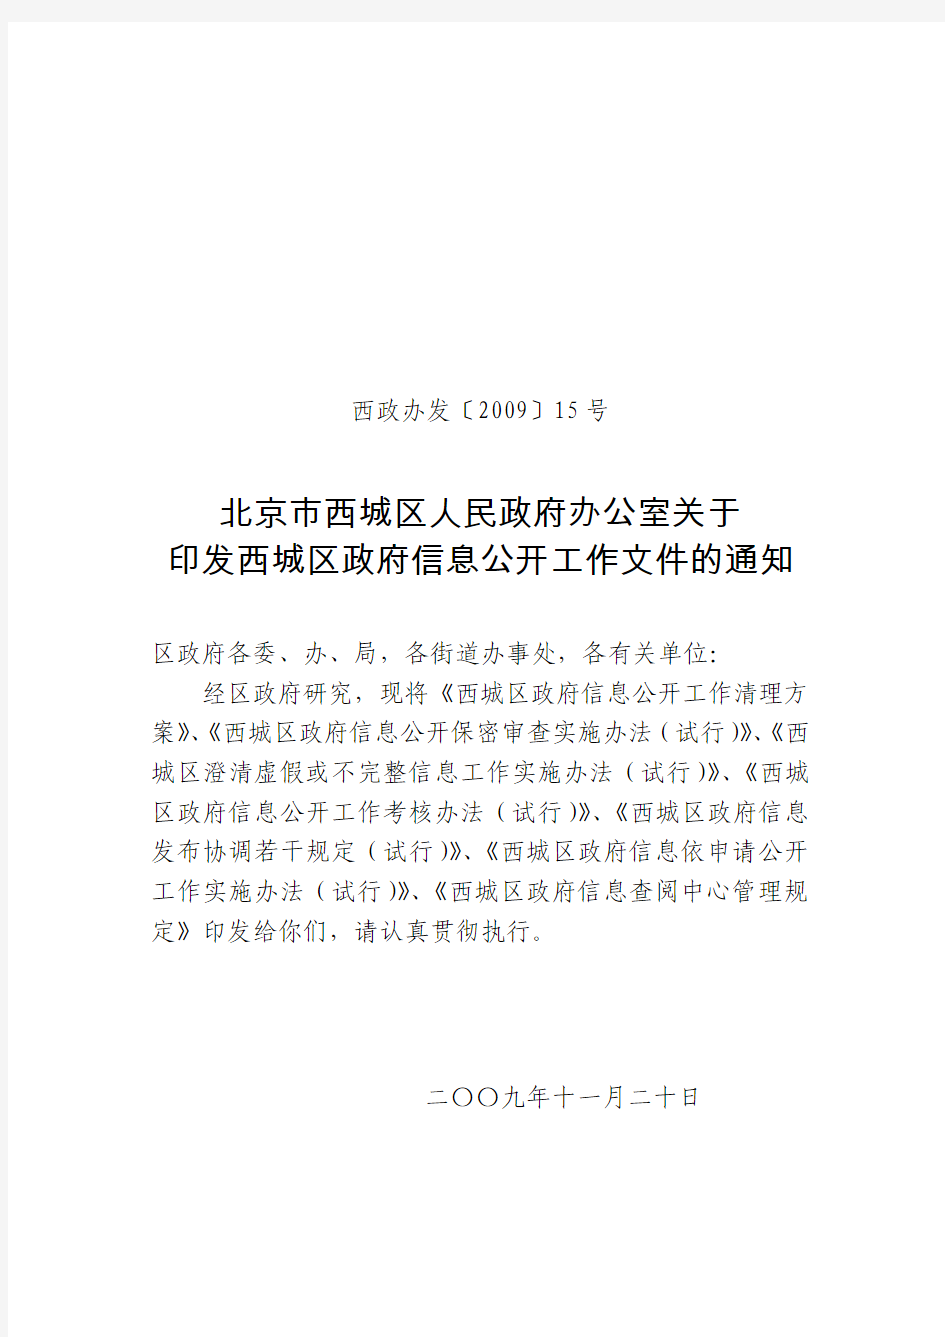 北京市西城区人民政府办公室关于印发西城区政府信息公开工作文件的通知